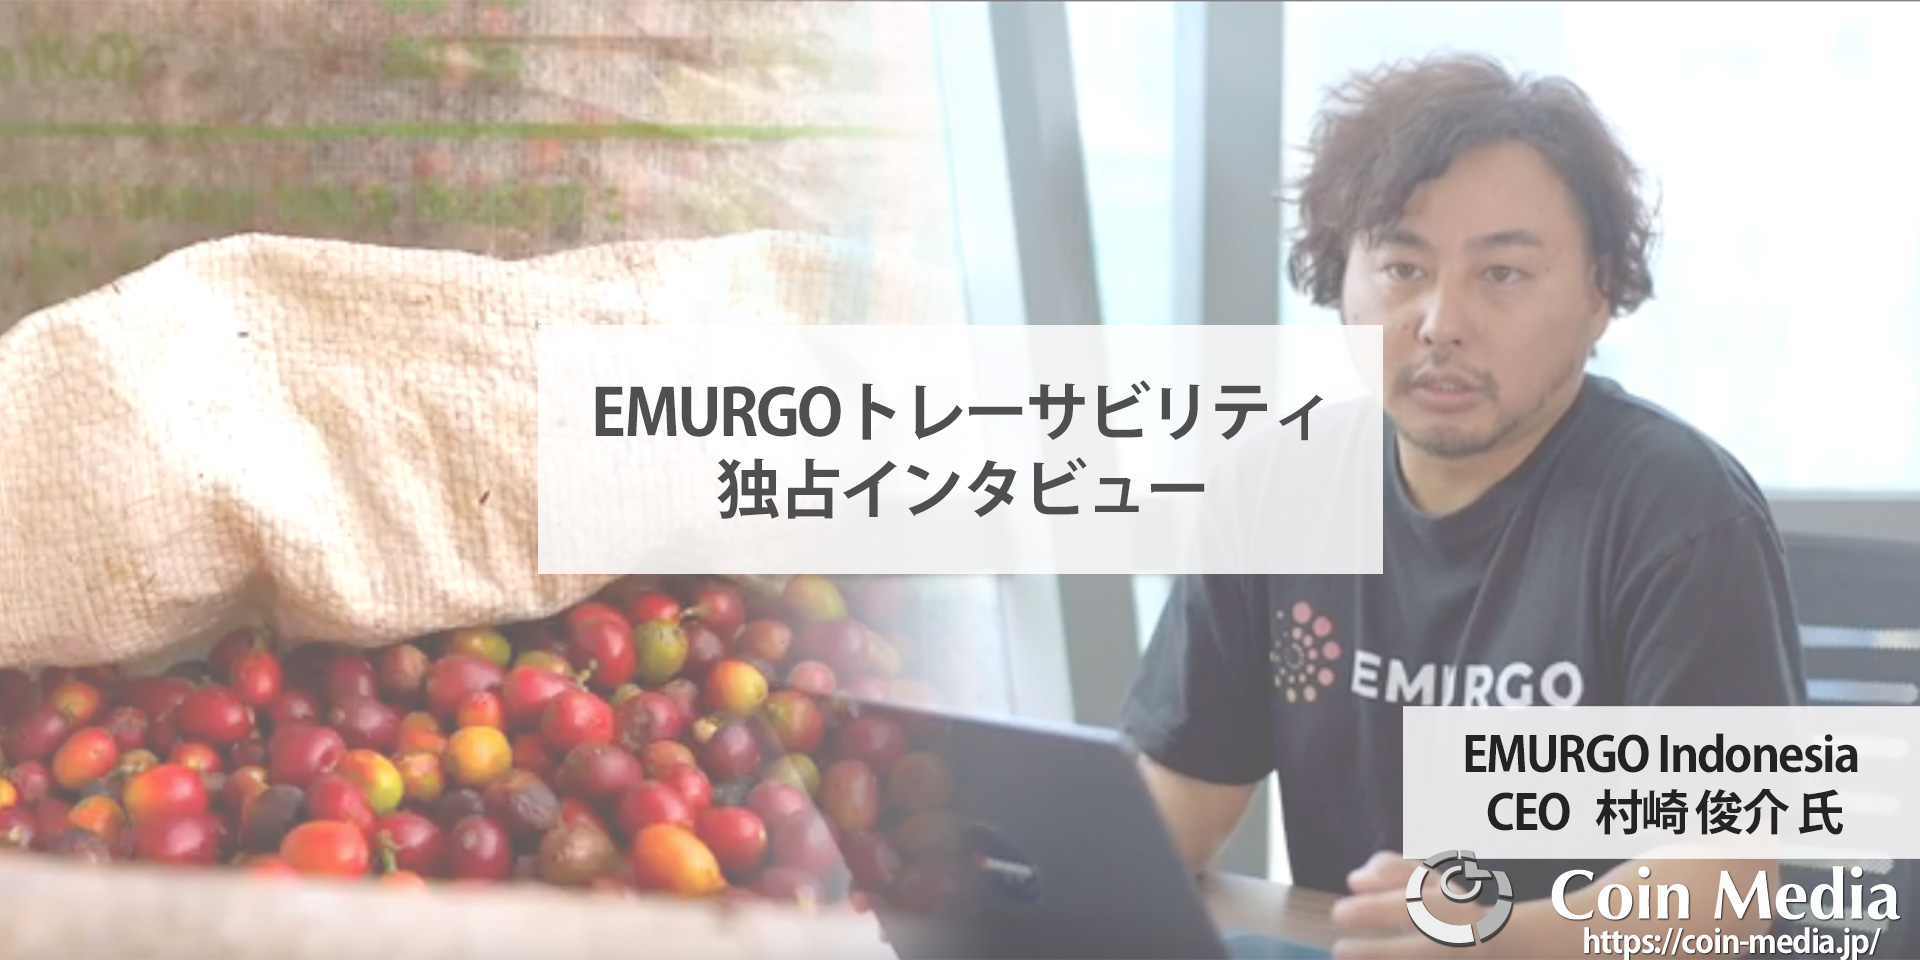 EMURGO（エマーゴ）がリリースしたブロックチェーンベースの追跡ソリューション「EMURGOトレーサビリティ」についてEMURGO Indonesia CEO村崎俊介氏にインタビュー